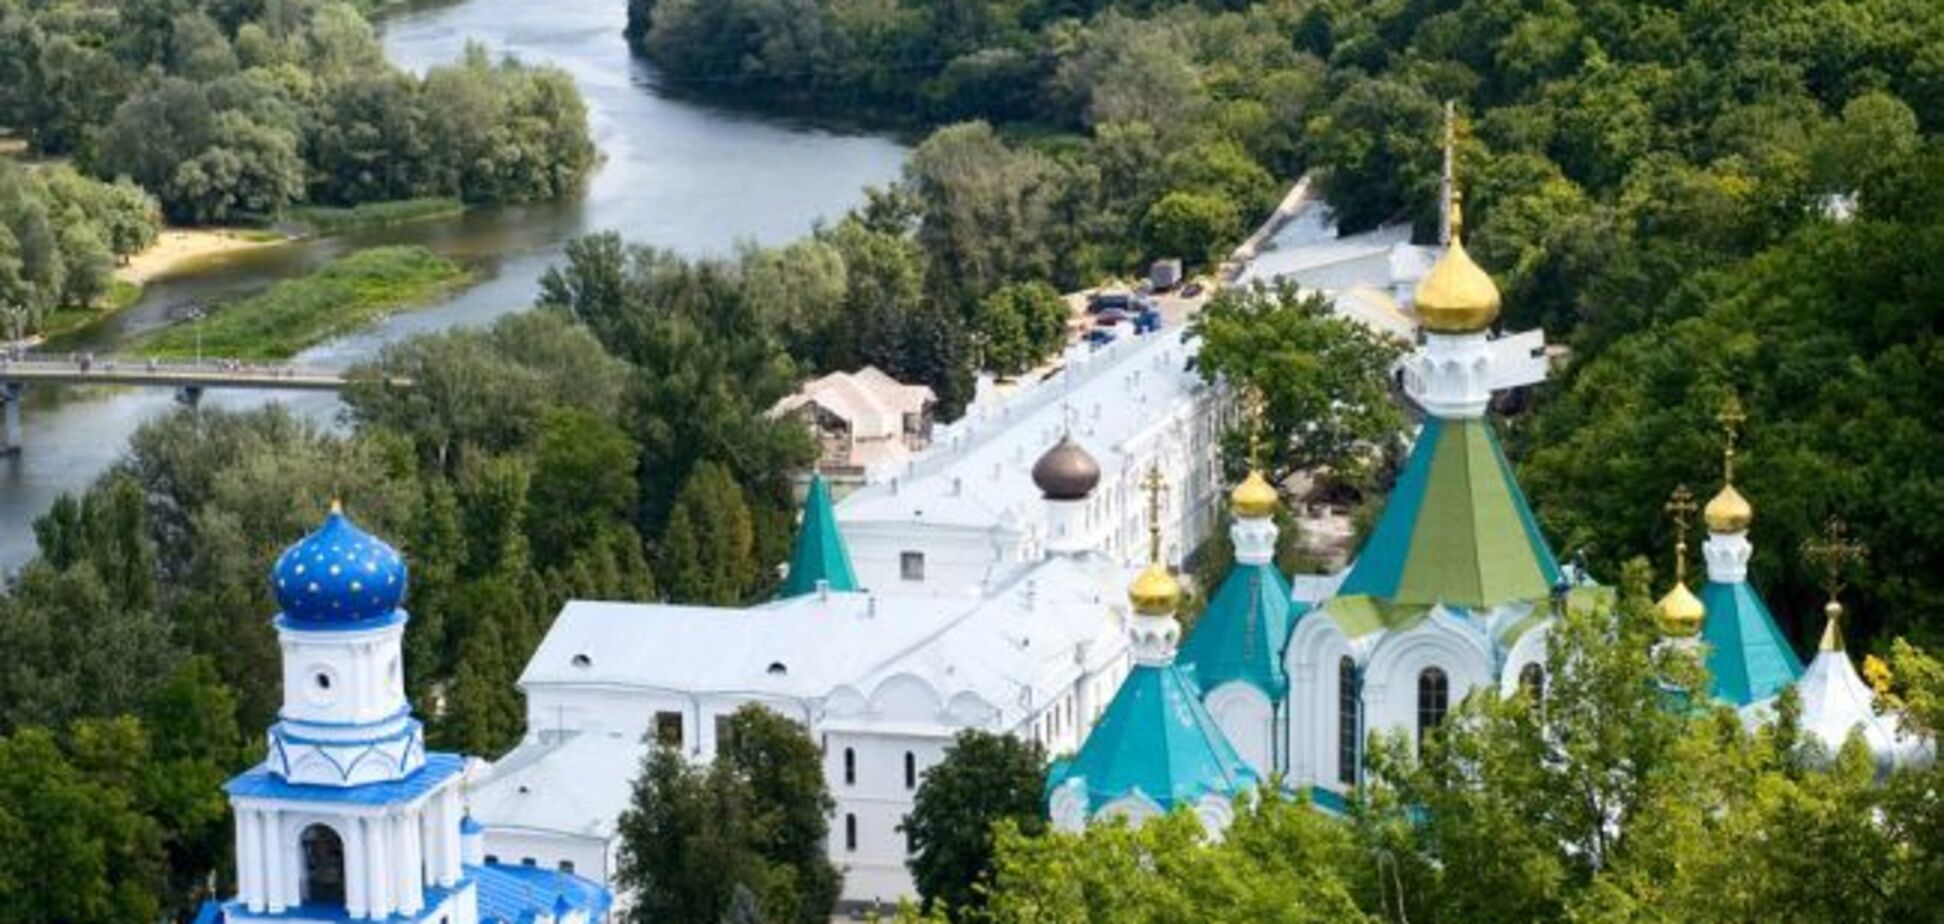 Церква УПЦ МП на Донбасі втрапила у черговий скандал: опубліковане фото